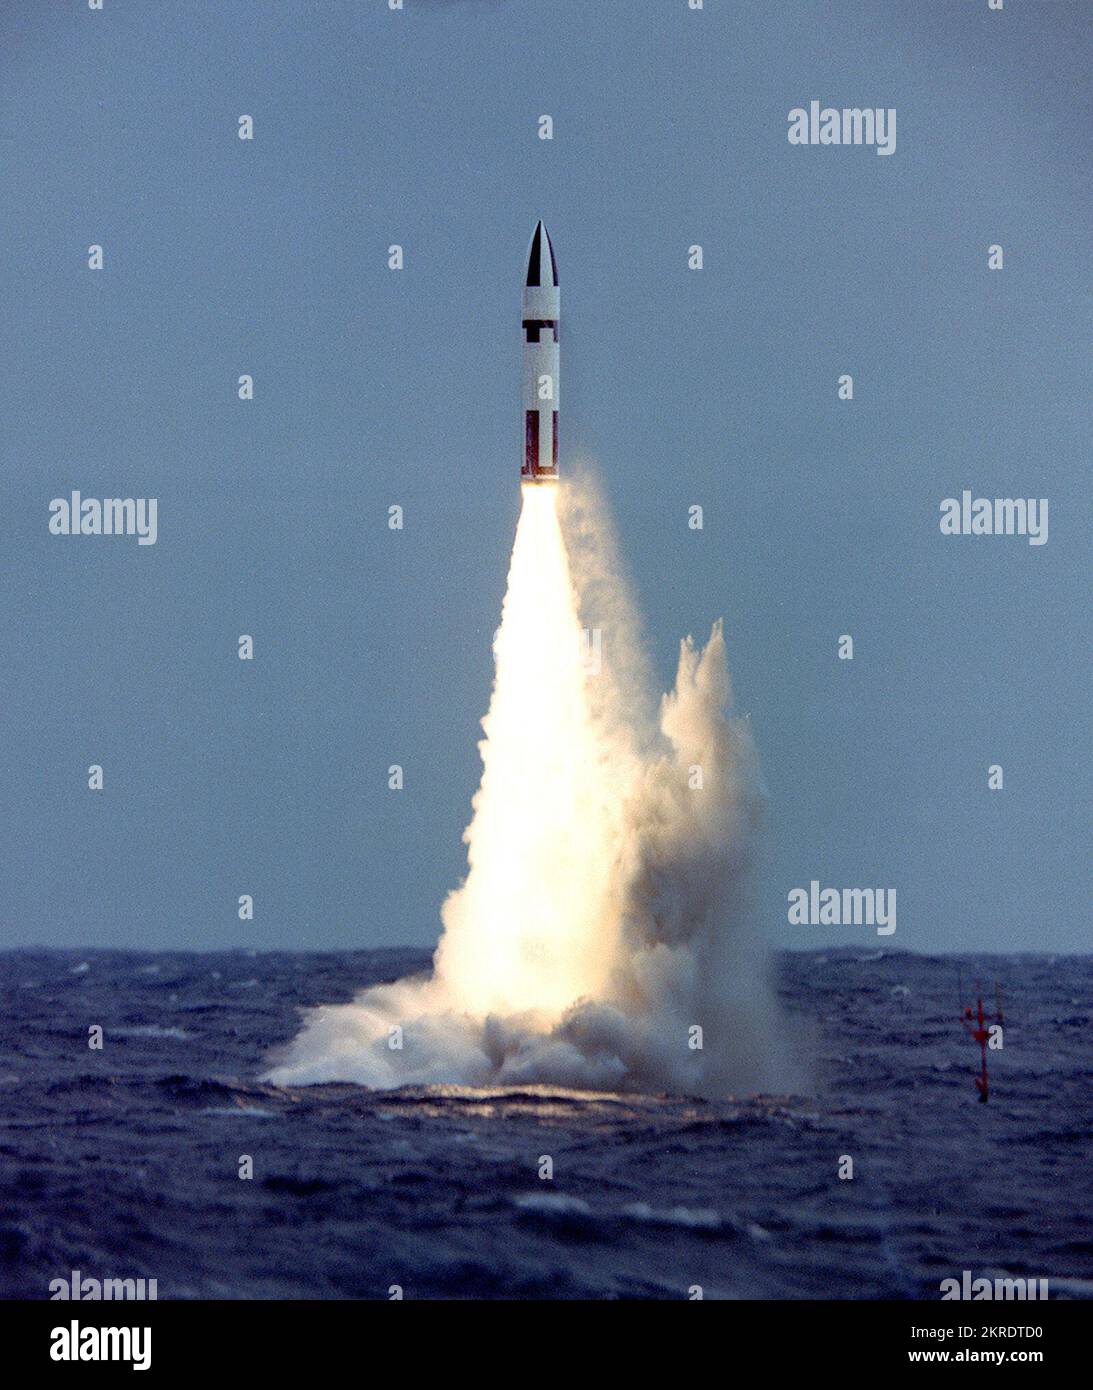 OCEANO ATLANTICO (25 maggio 1964) – il primo missile disarmato Polaris A3 lancia con successo il sottomarino missilistico balistico USS Daniel Webster (SSBN 626) al largo di Cape Kennedy, Florida. Due missili sono stati lanciati con successo dalla SSBN 626 durante questo esercizio. Oggi, la missione di deterrenza strategica basata sul mare continua. L'attuale generazione di sottomarini ha lanciato un missile balistico, il Trident II D5/D5LE, insieme al missile balistico intercontinentale e ai bombardamenti in grado di creare la capacità strategica di deterrenza nucleare della nazione. La terna di funzionalità: SLB Foto Stock